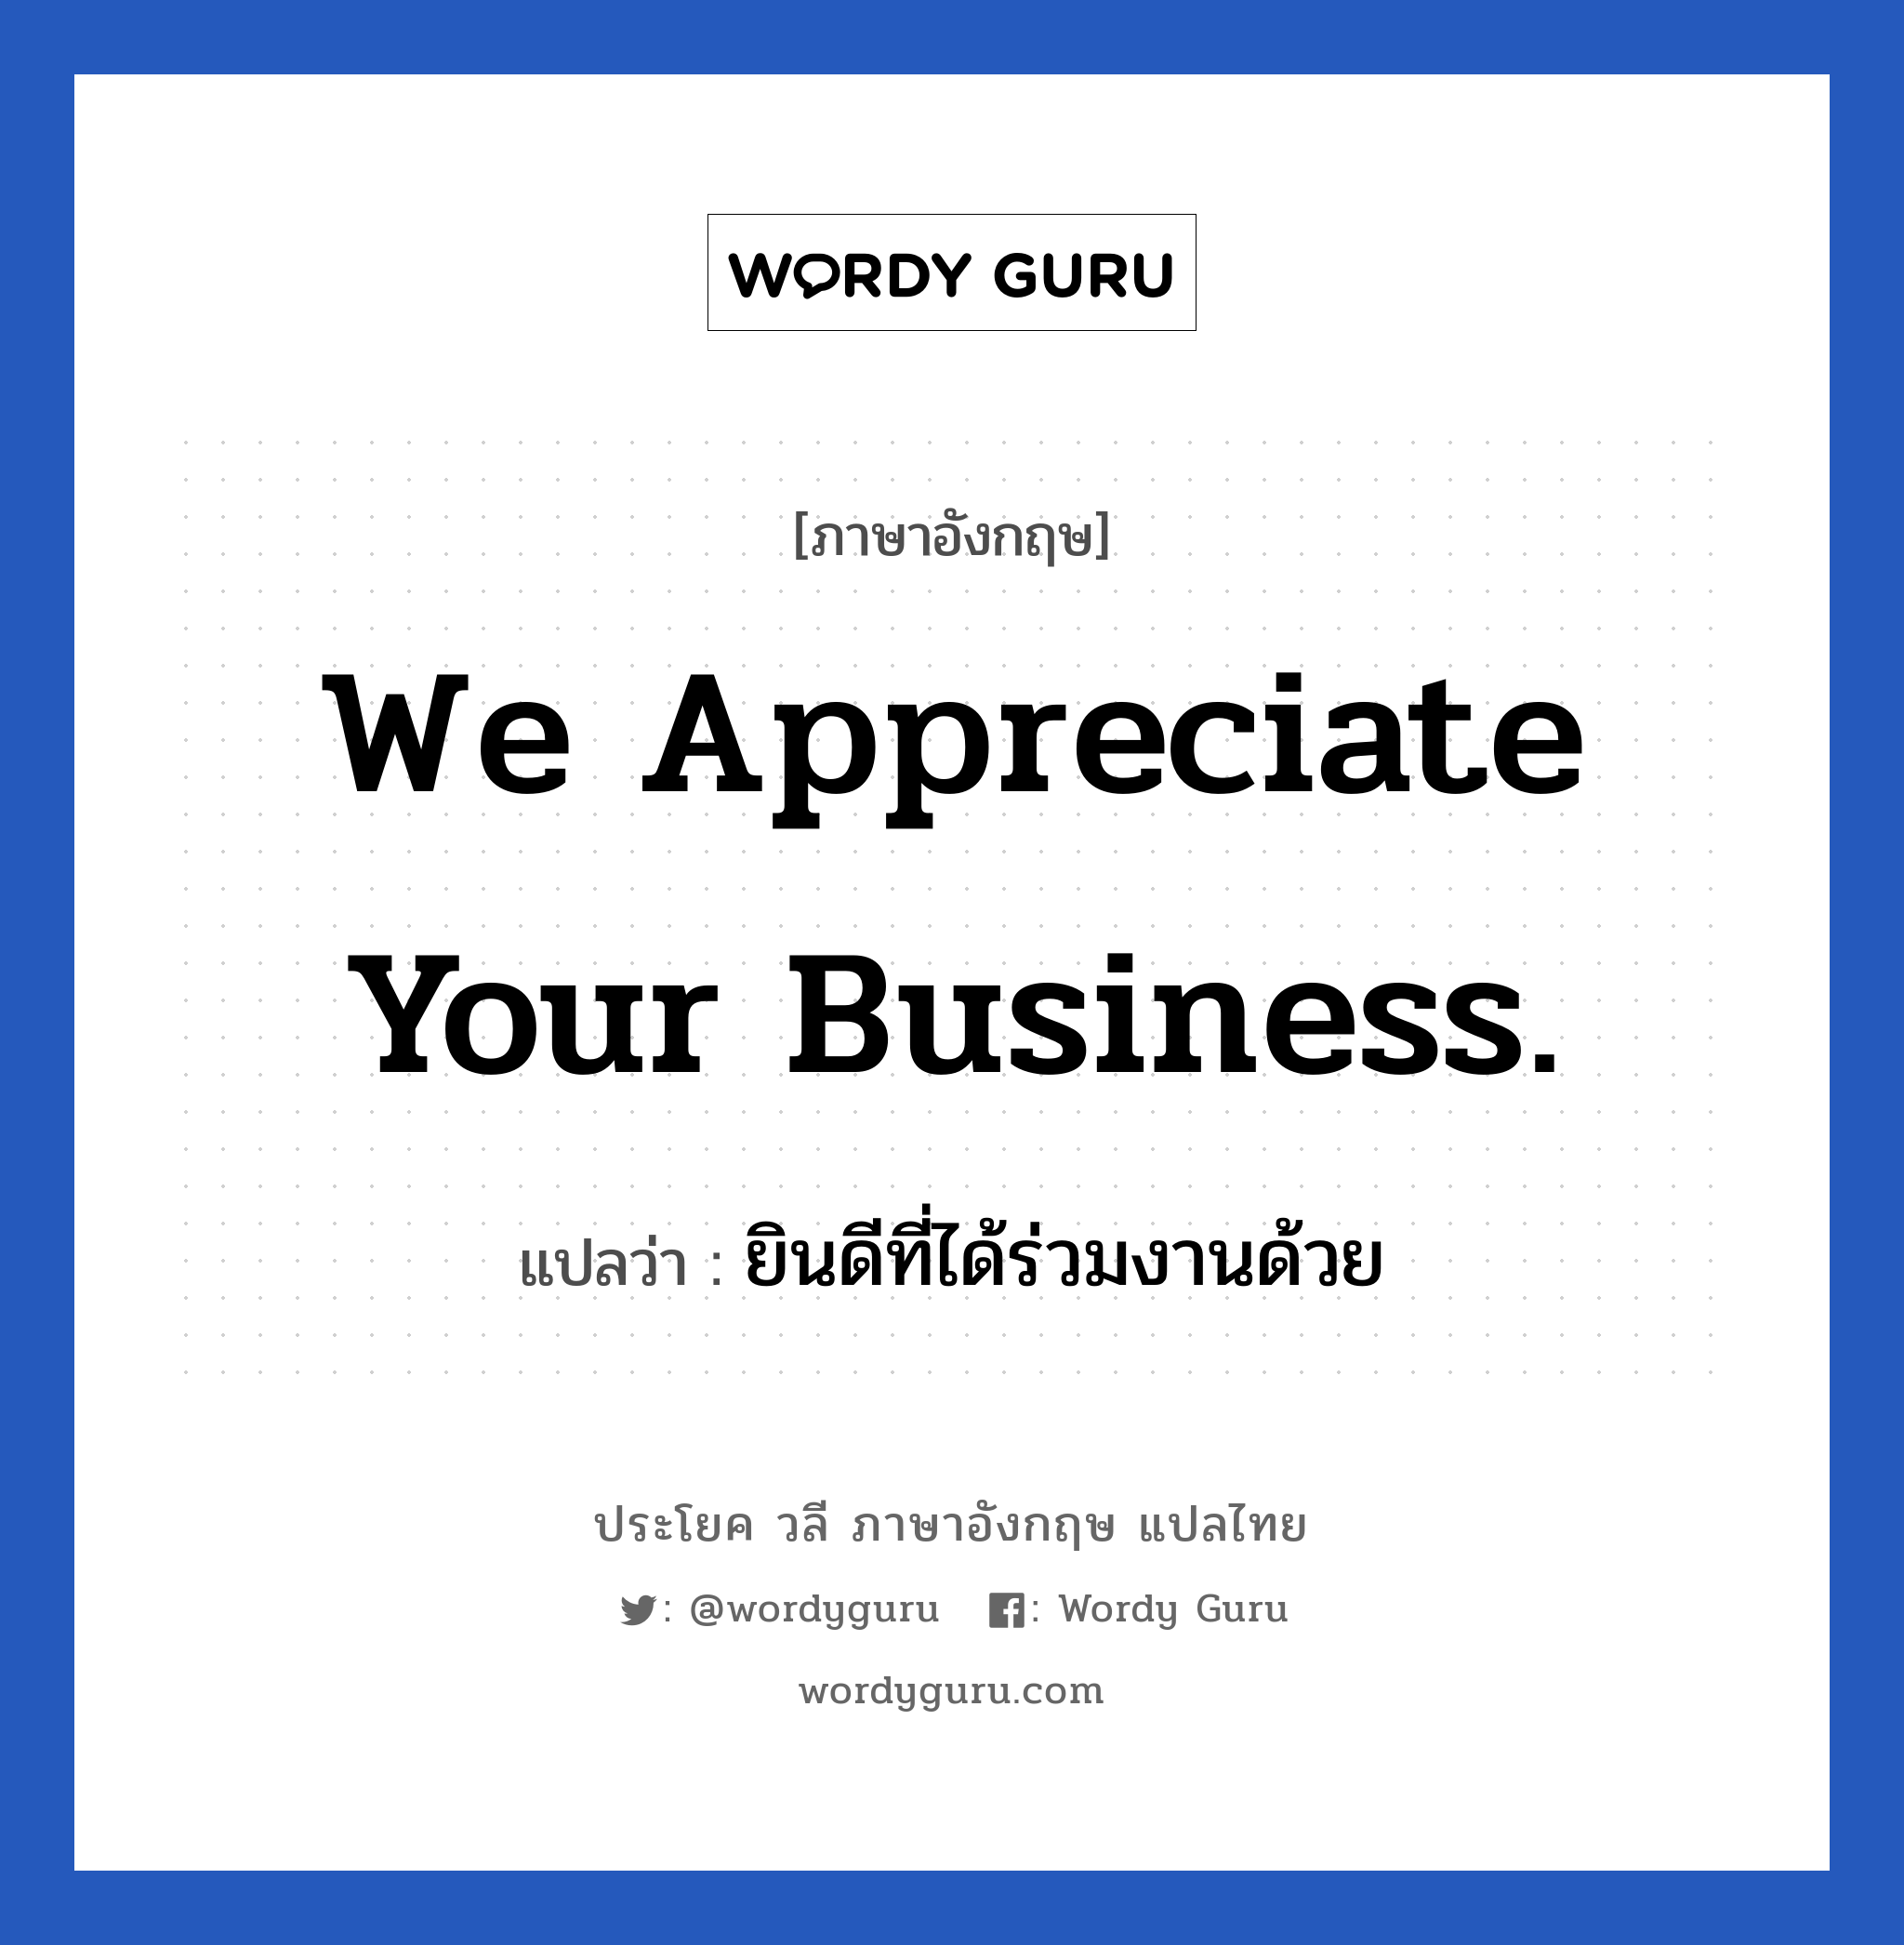 ยินดีที่ได้ร่วมงานด้วย ภาษาอังกฤษ?, วลีภาษาอังกฤษ ยินดีที่ได้ร่วมงานด้วย แปลว่า We appreciate your business. หมวด แสดงความยินดีที่ได้รู้จัก